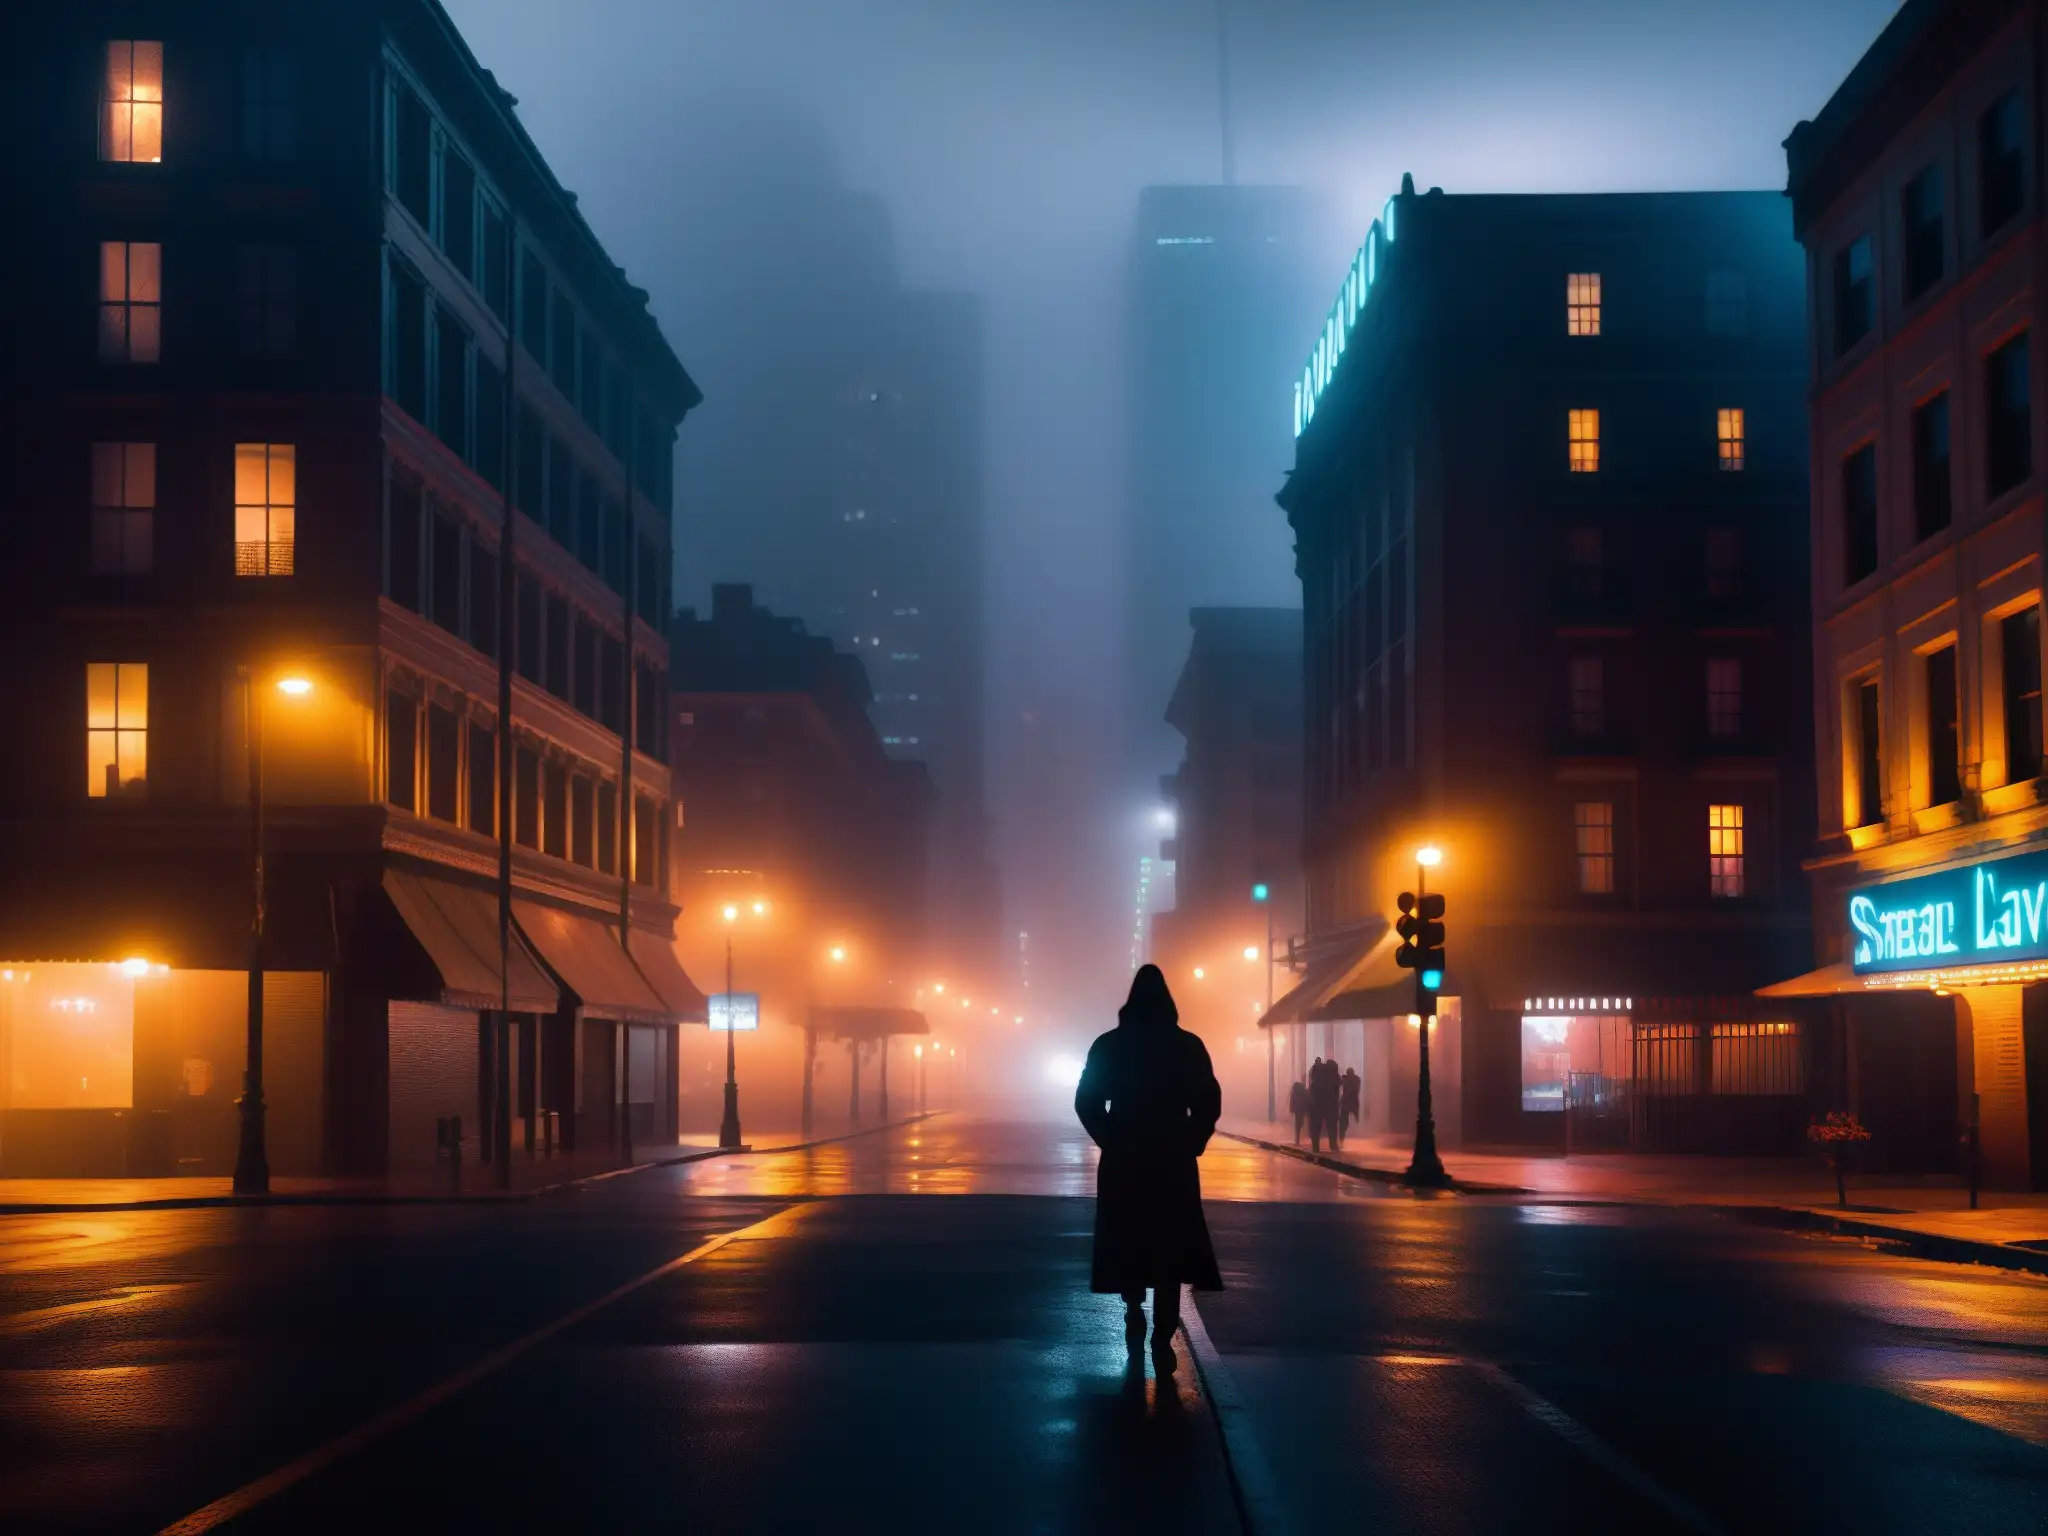 En la misteriosa calle nocturna, un atractivo de lo inexplicable en leyendas urbanas se siente entre la densa niebla y las luces de neón